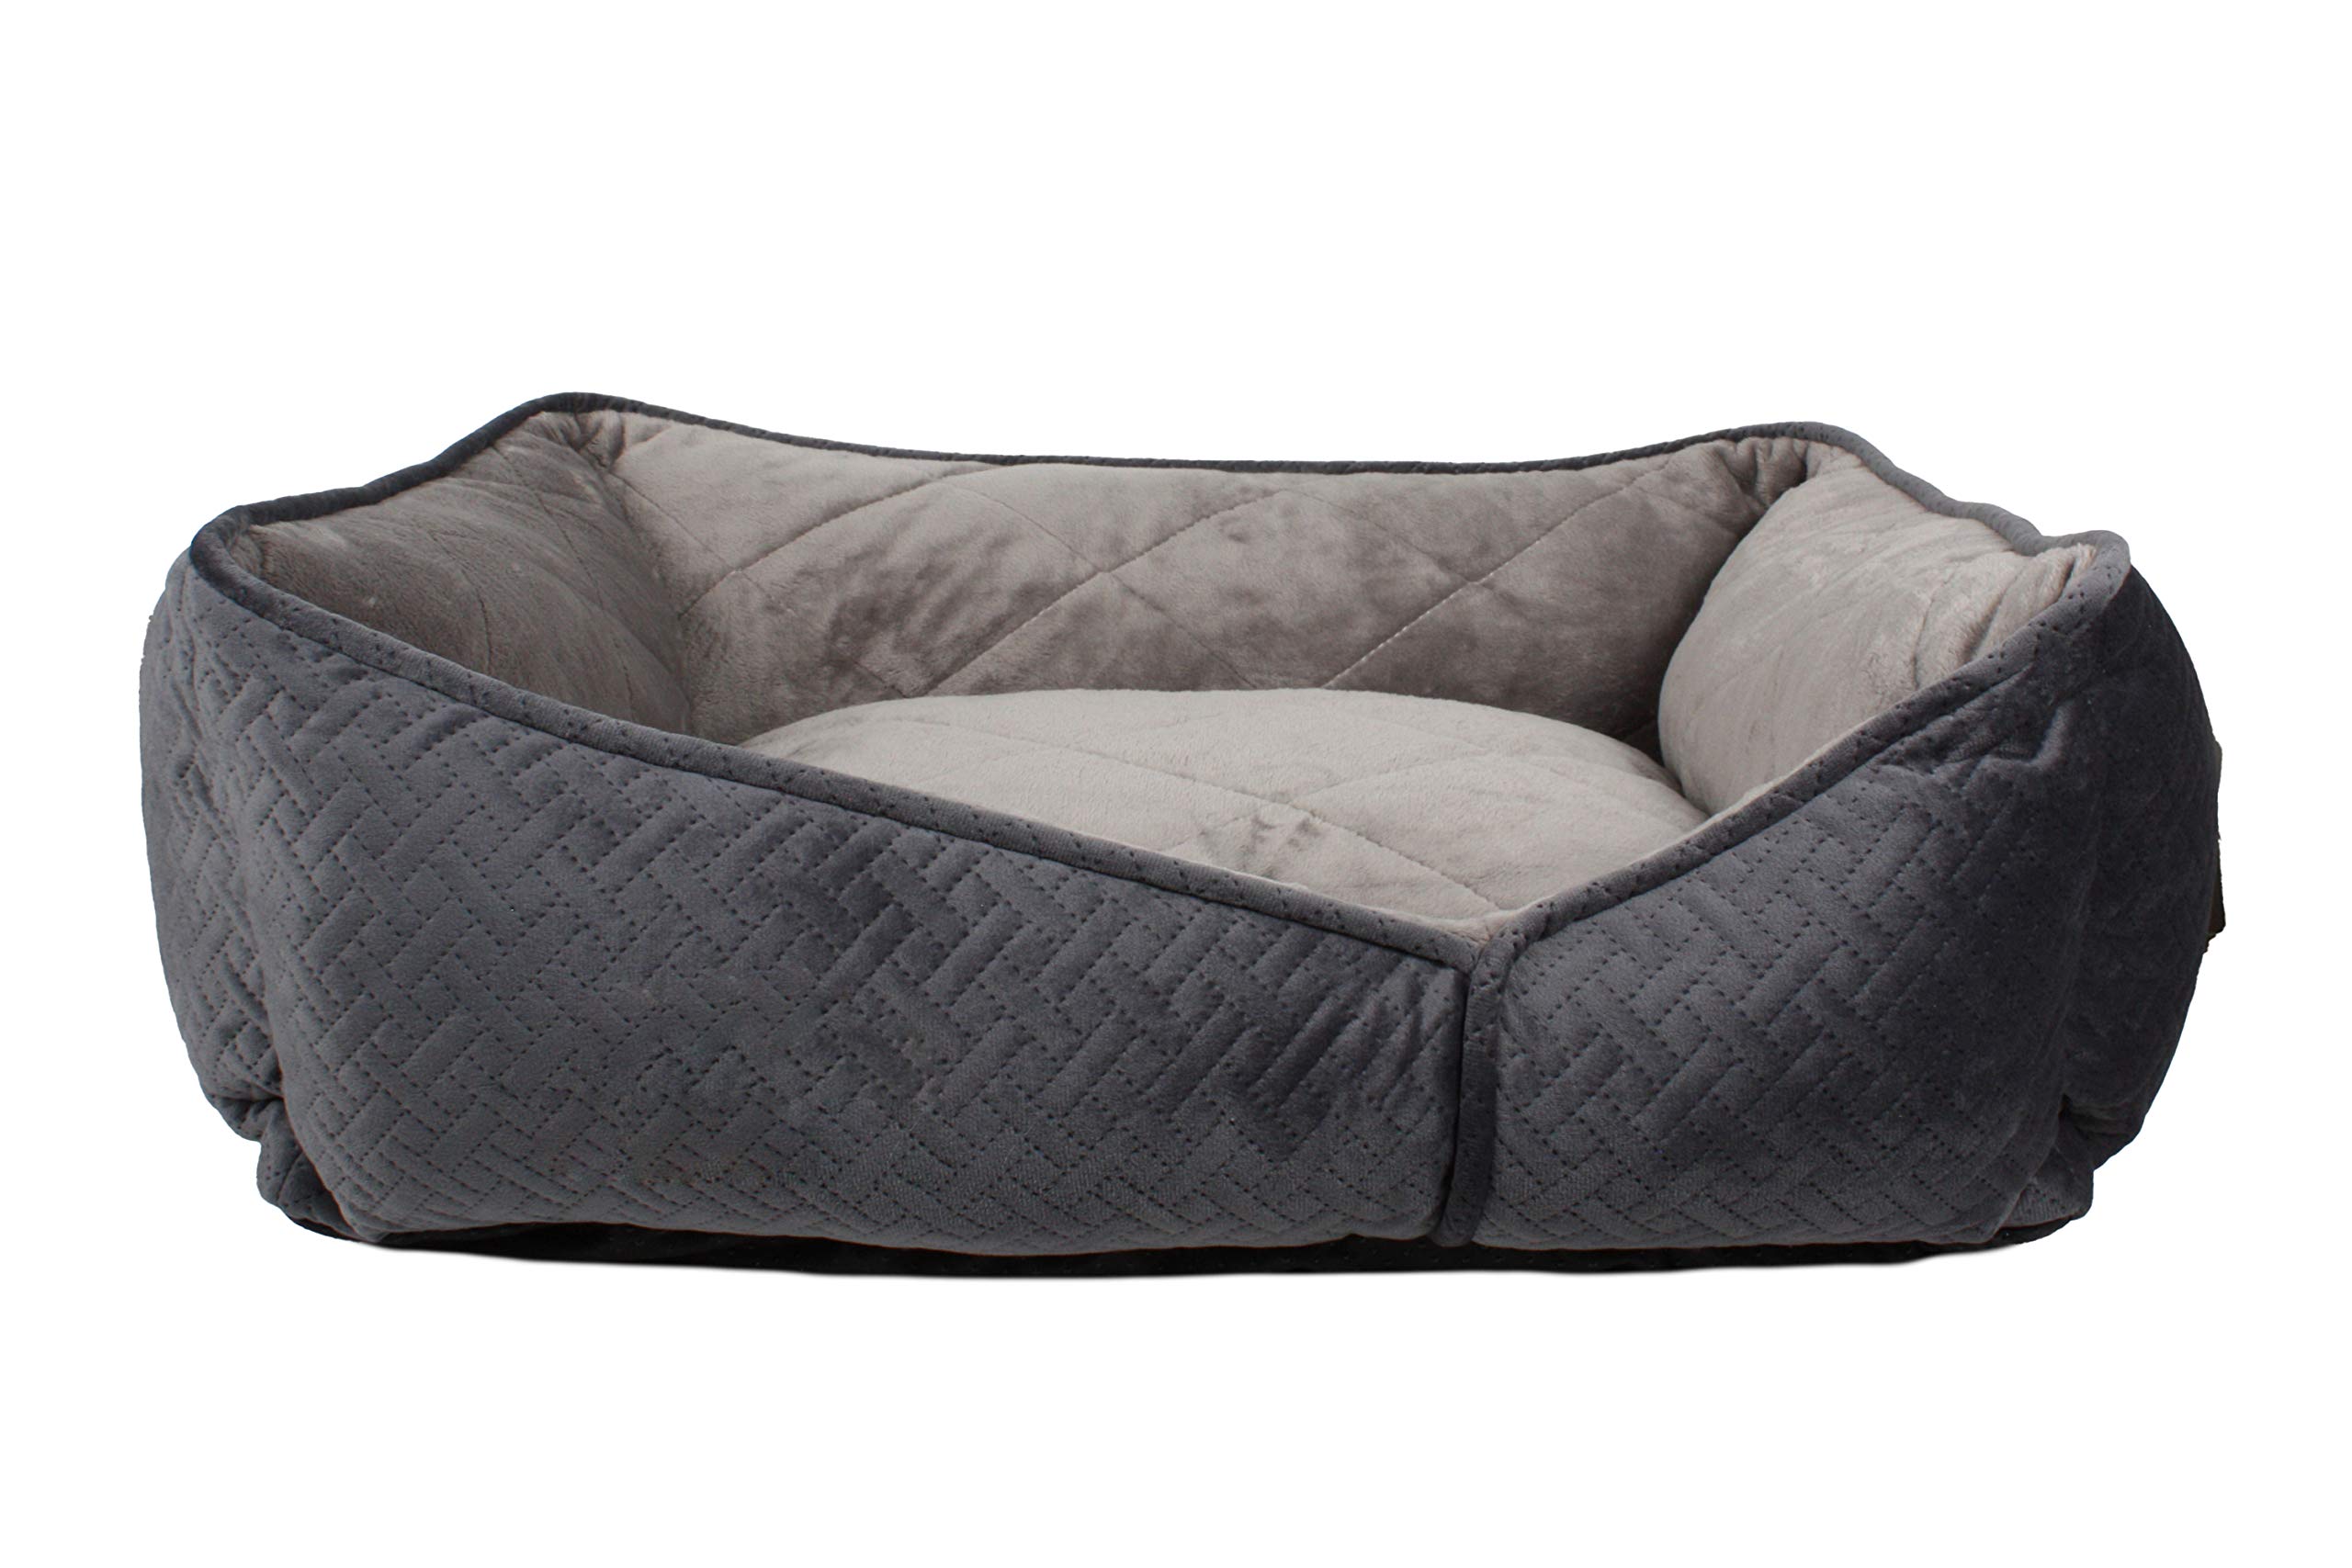 Pet Brands Haustier-Sofa für Hunde/Welpen, luxuriös, superweich, gesteppt, Rutschfester Boden, groß, grau, 70 x 60 x 22 cm